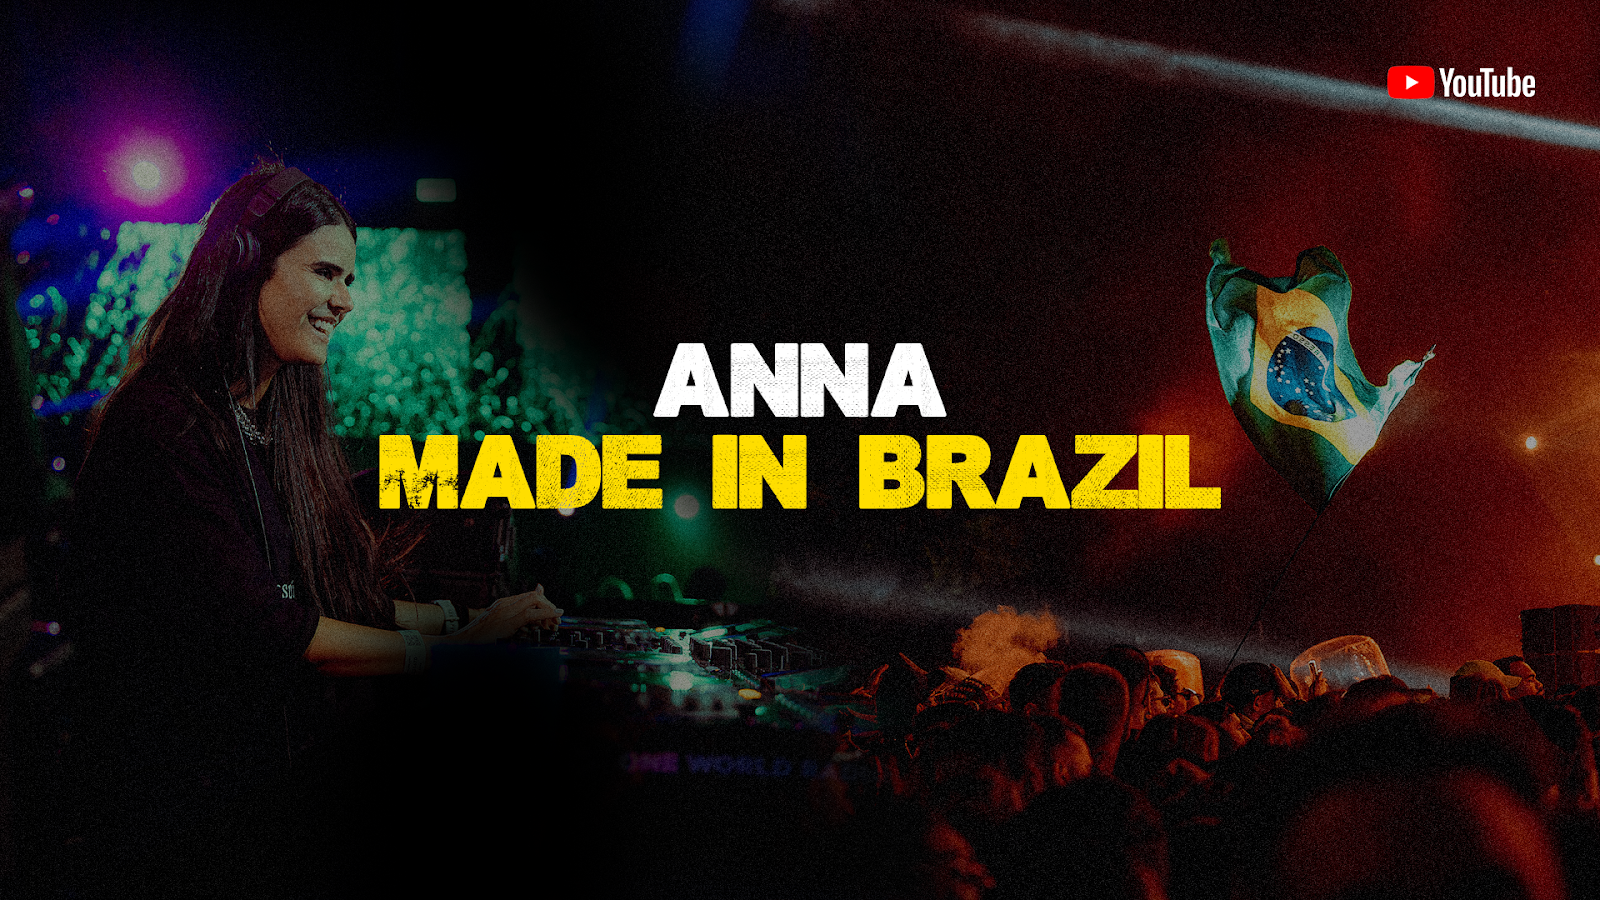 ANNA anuncia documentario sobre sua trajetoria de DJ em raro registro da musica eletronica nacional POP CYBER